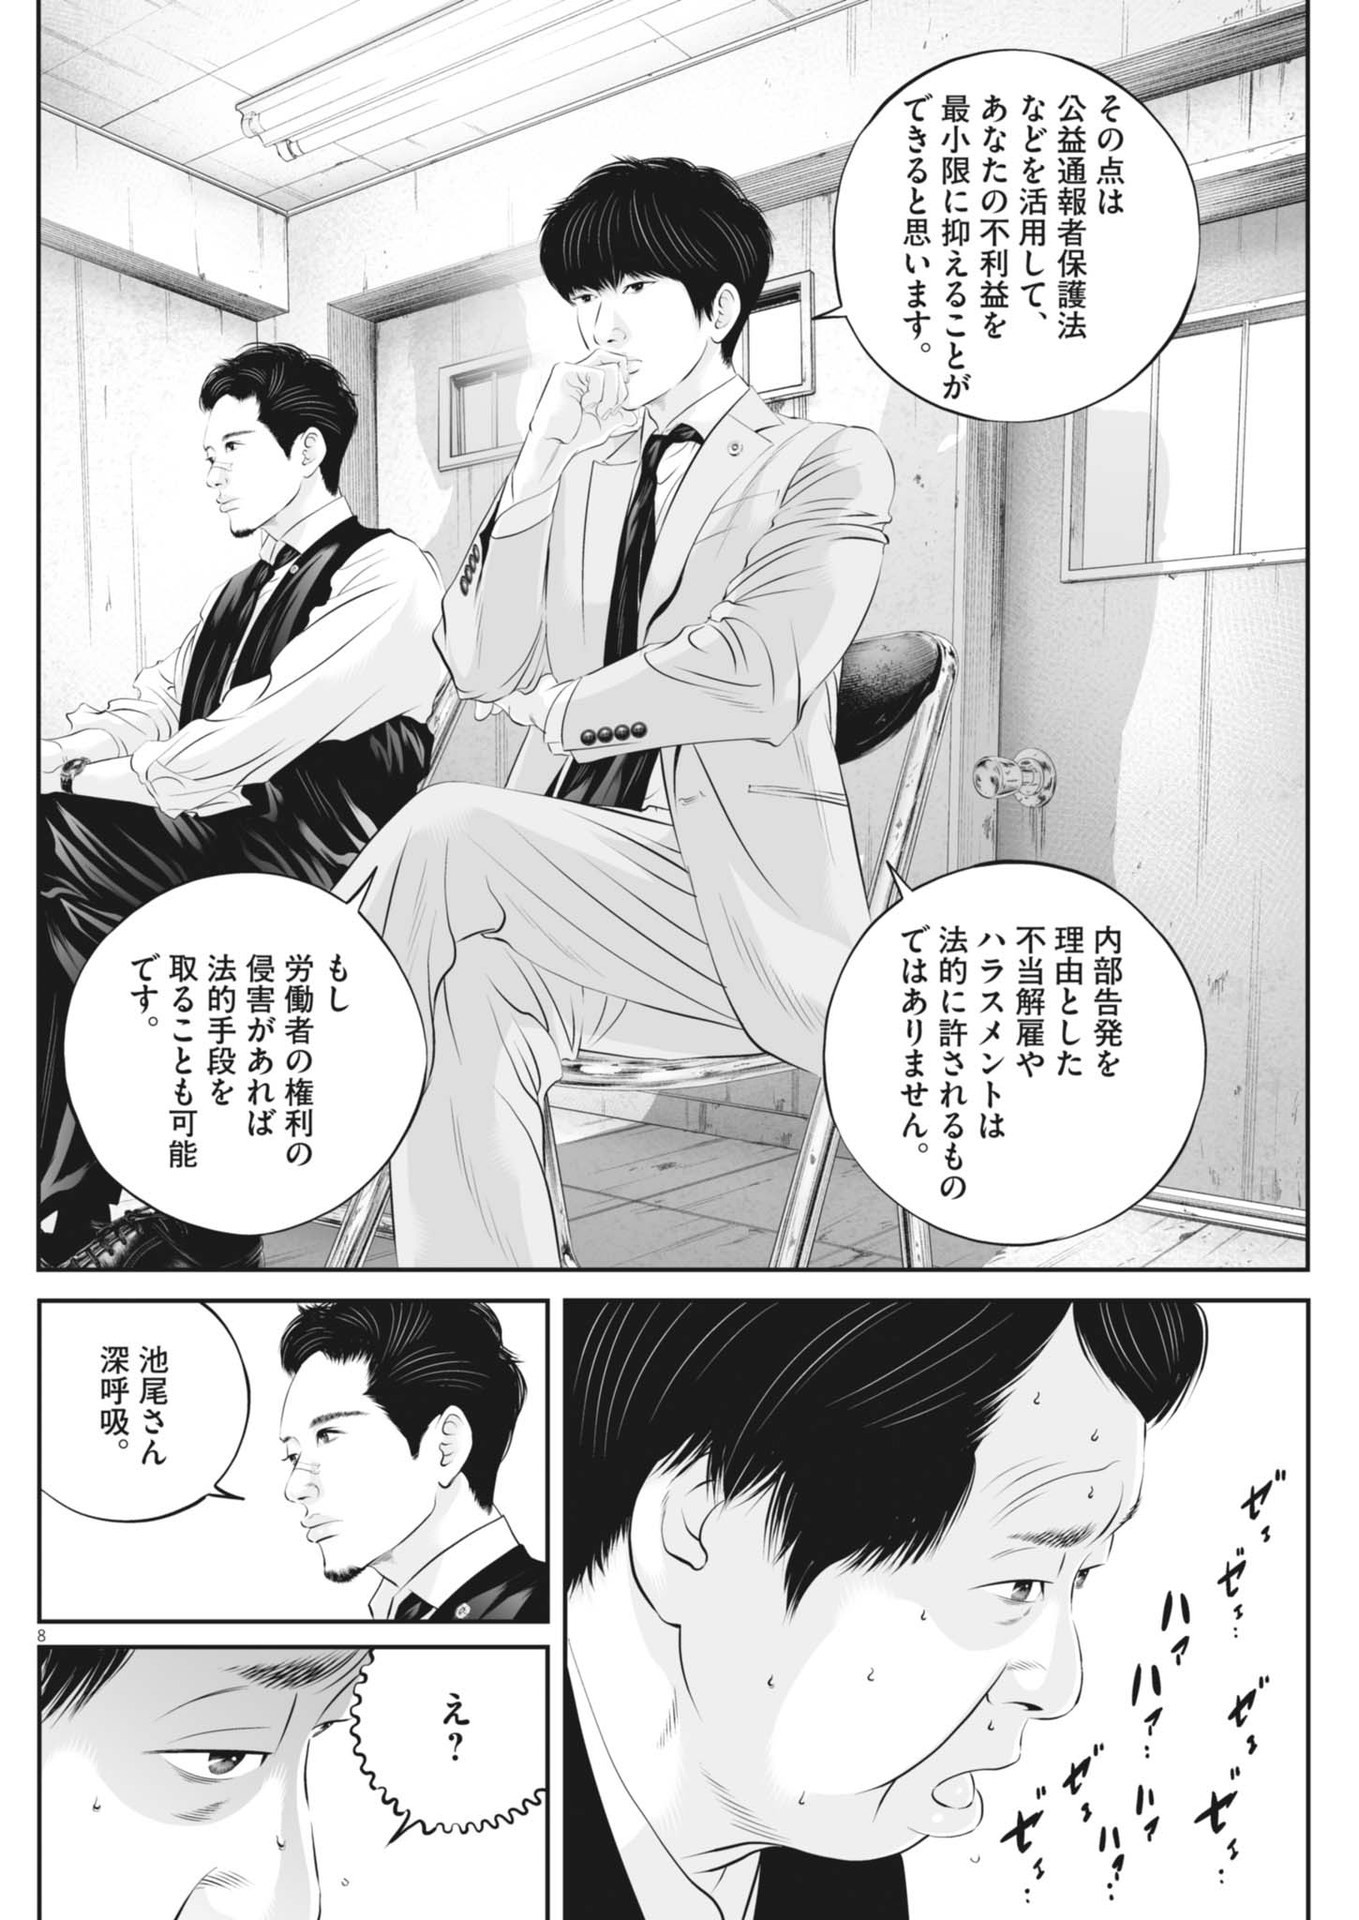 Kujou no Taizai - Chapter 104 - Page 8